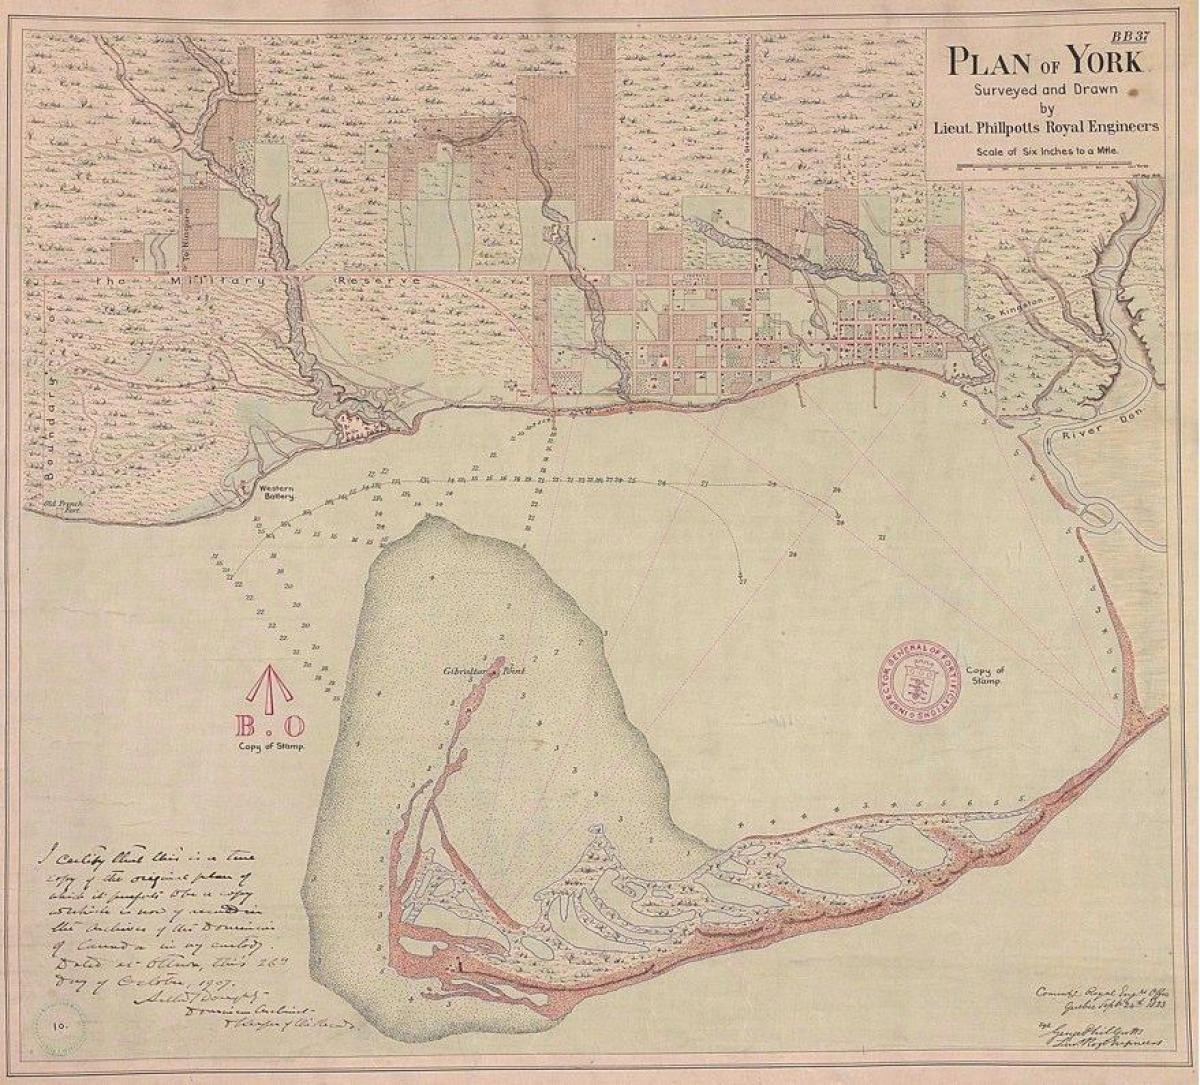 نقشه زمین یورک تورنتو 1787-1884